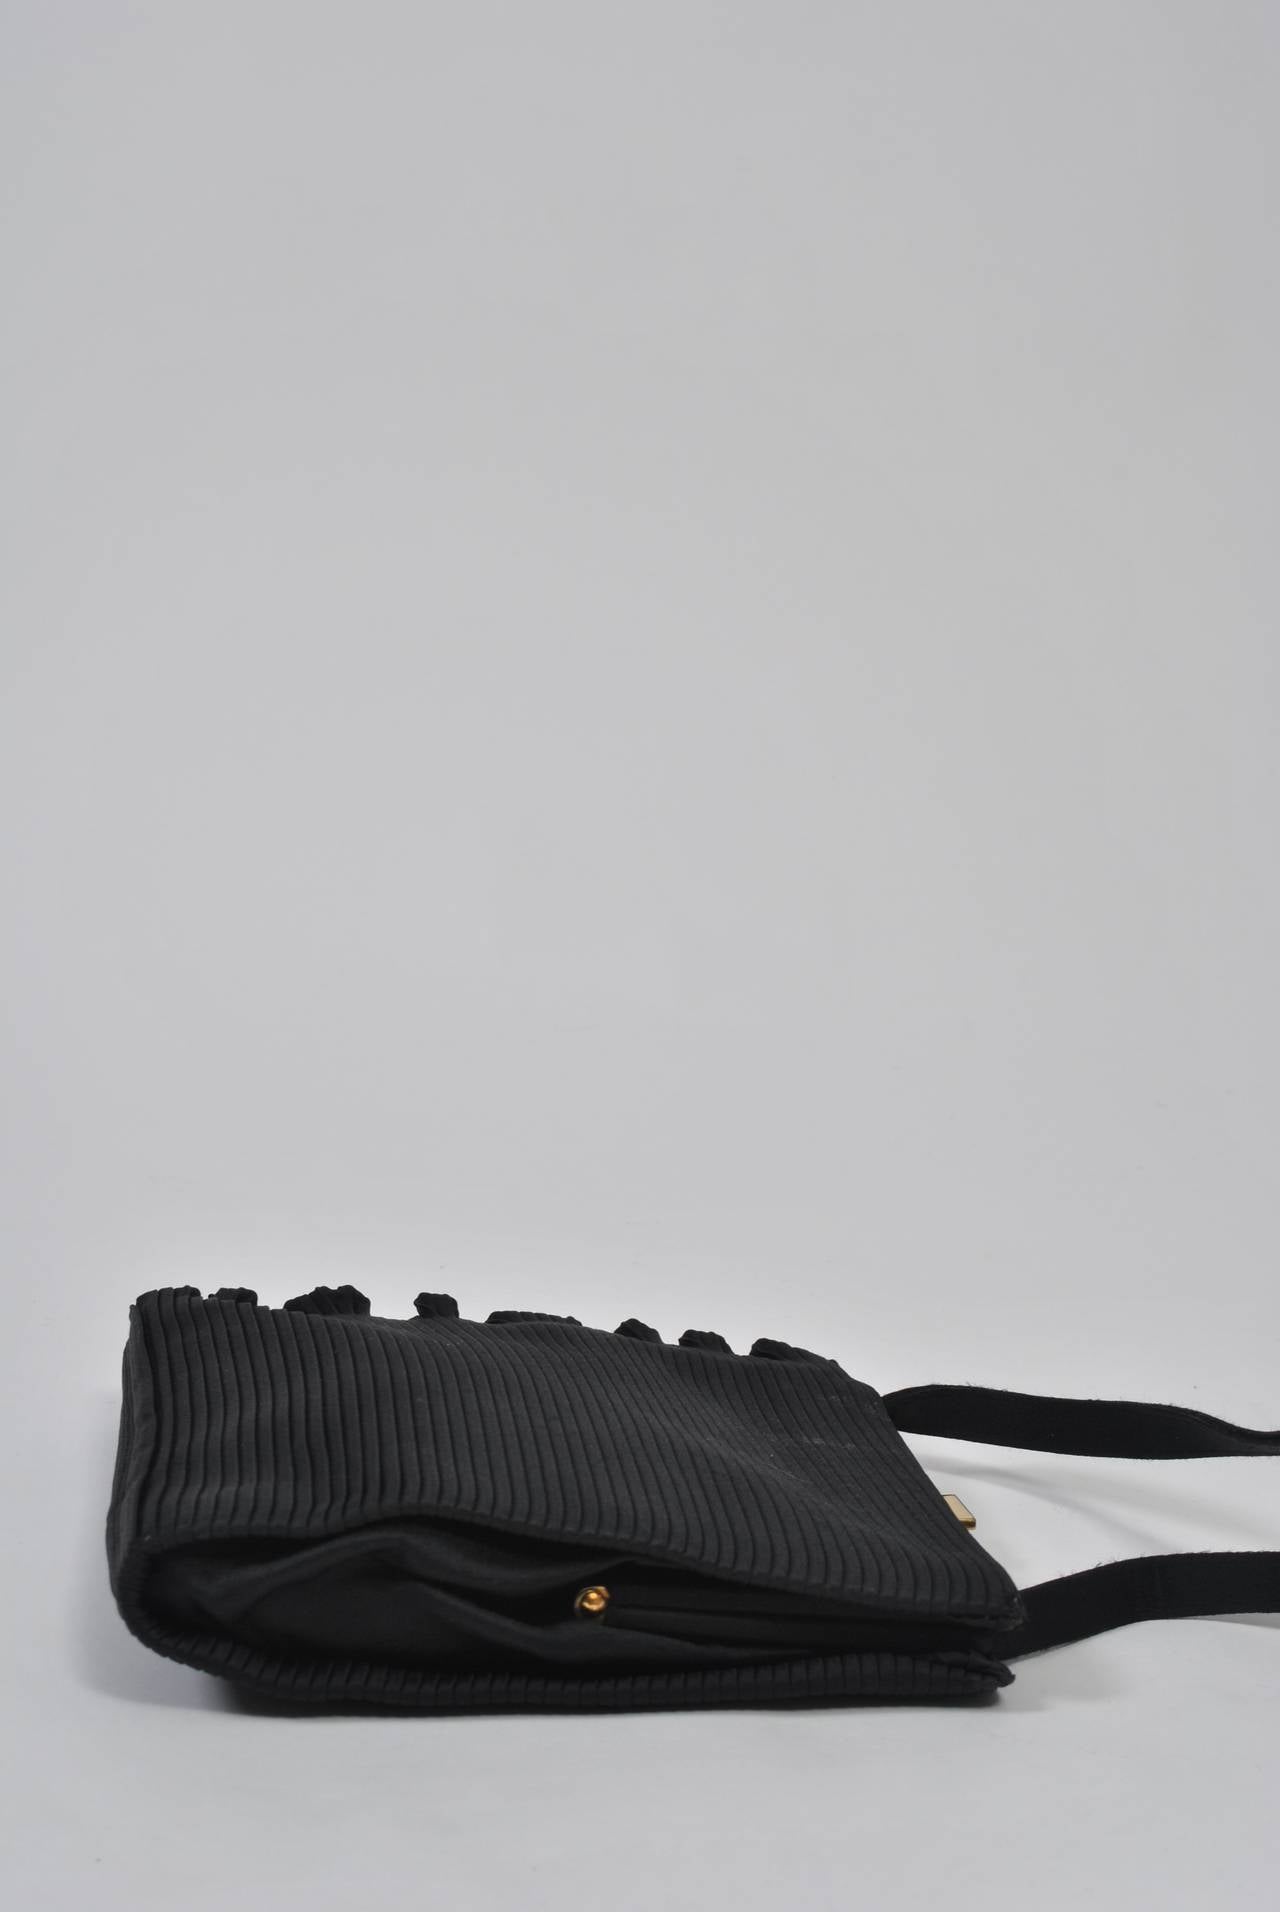 Un sac du soir inhabituel en satin noir mat à côtes verticales, avec un bord volanté naturel sur un côté. Poignée simple, fermoir en or. Intérieur en satin noir avec compartiment latéral. Discret et élégant. Pas d'étiquette.